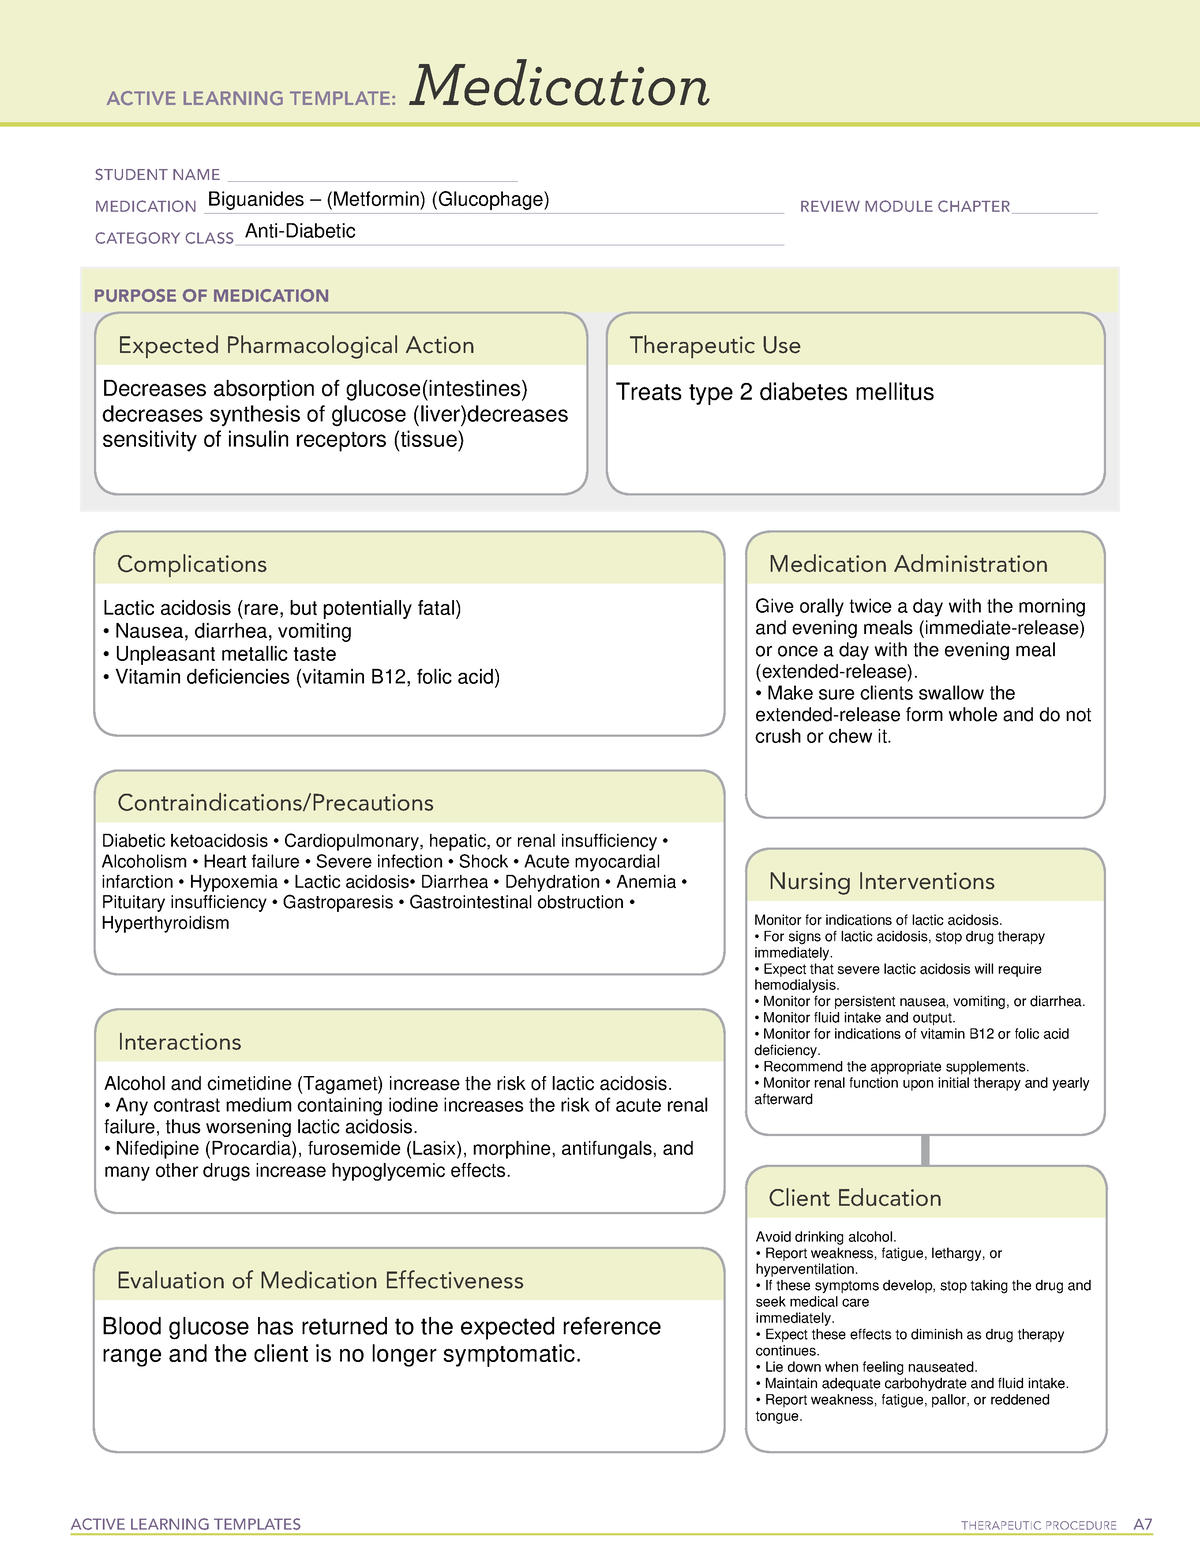 ATI Biguanides (Metformin) (Glucophage) Med Sheet ACTIVE